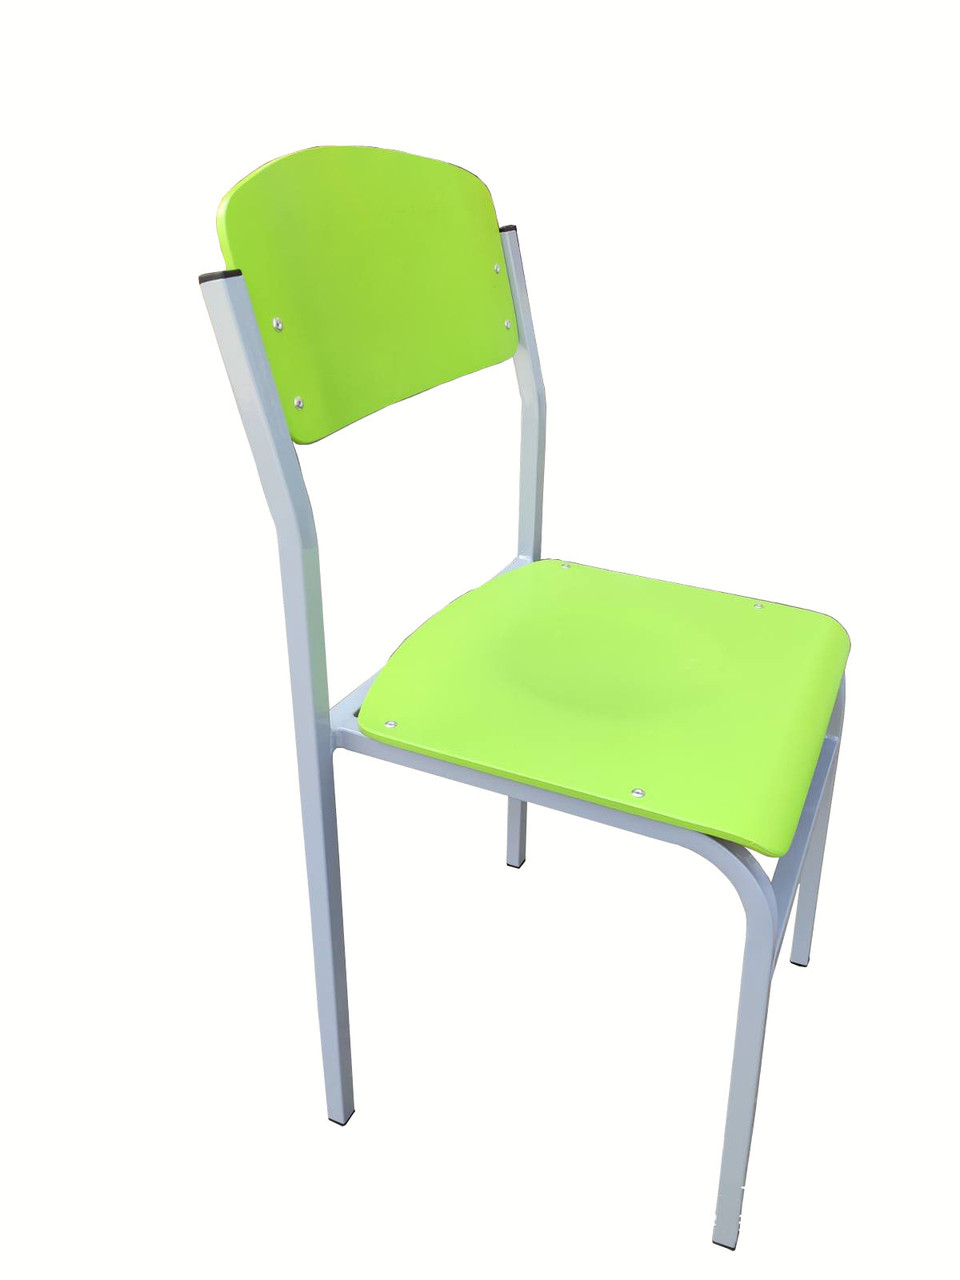 Стілець учнівський Кадет-К. Шкільний стілець фанера, парта. Офісні стільці різних кольорів